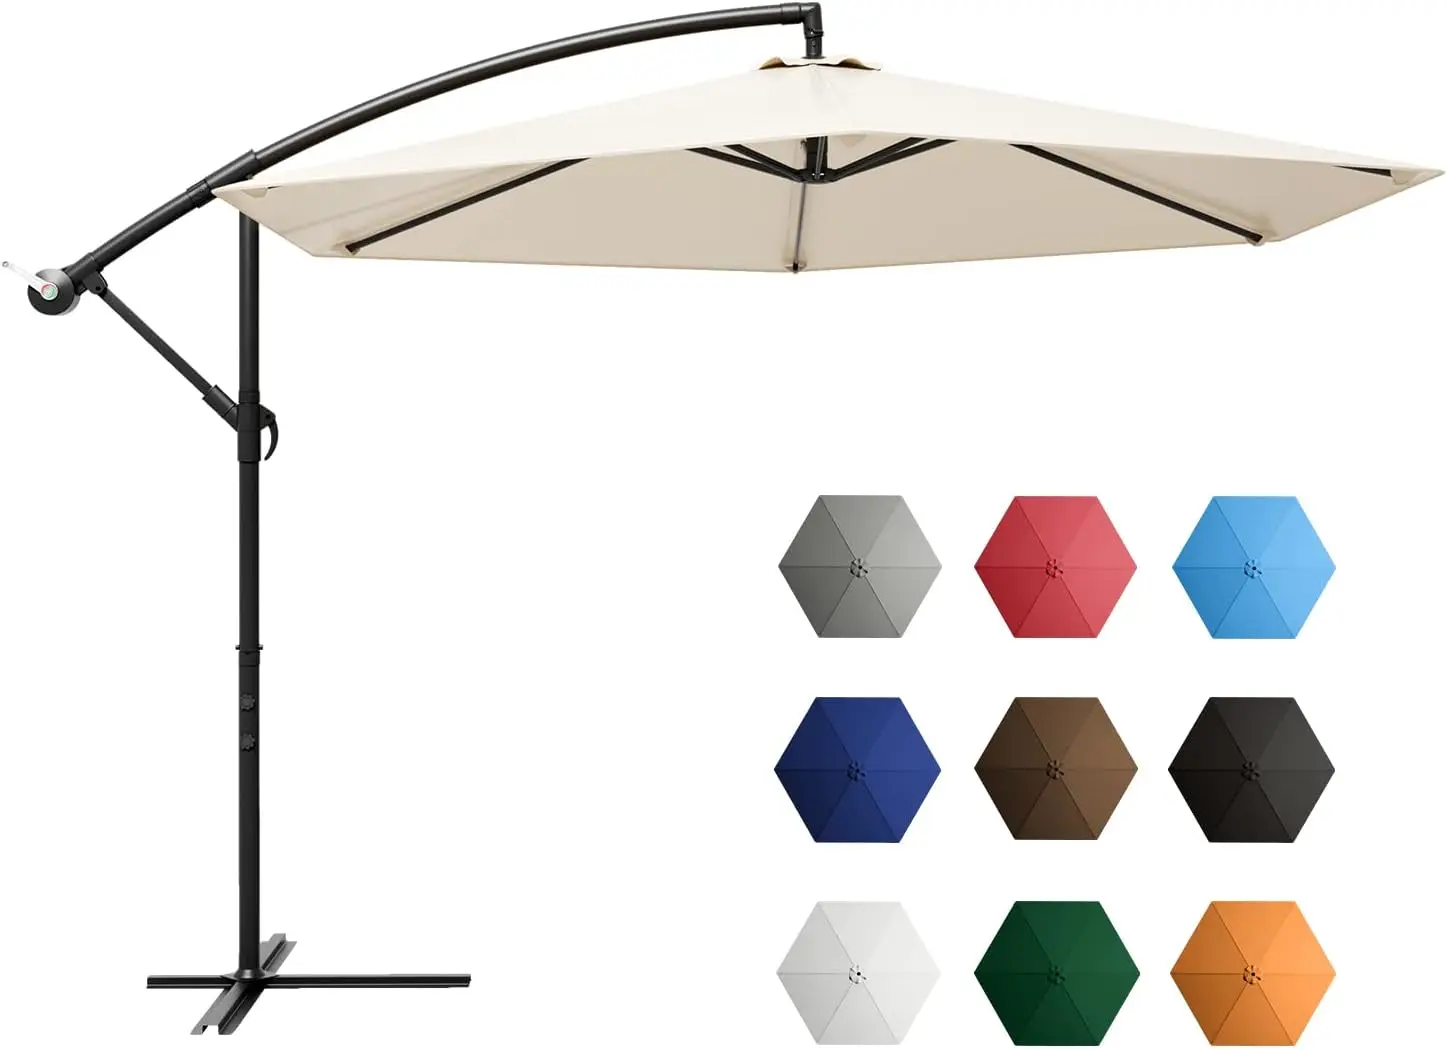 

Зонт 10 футов, подвесной зонт, зонт для наружного рынка с кривошипом и поперечным основанием (бежевый), мини-зонт, зонтик